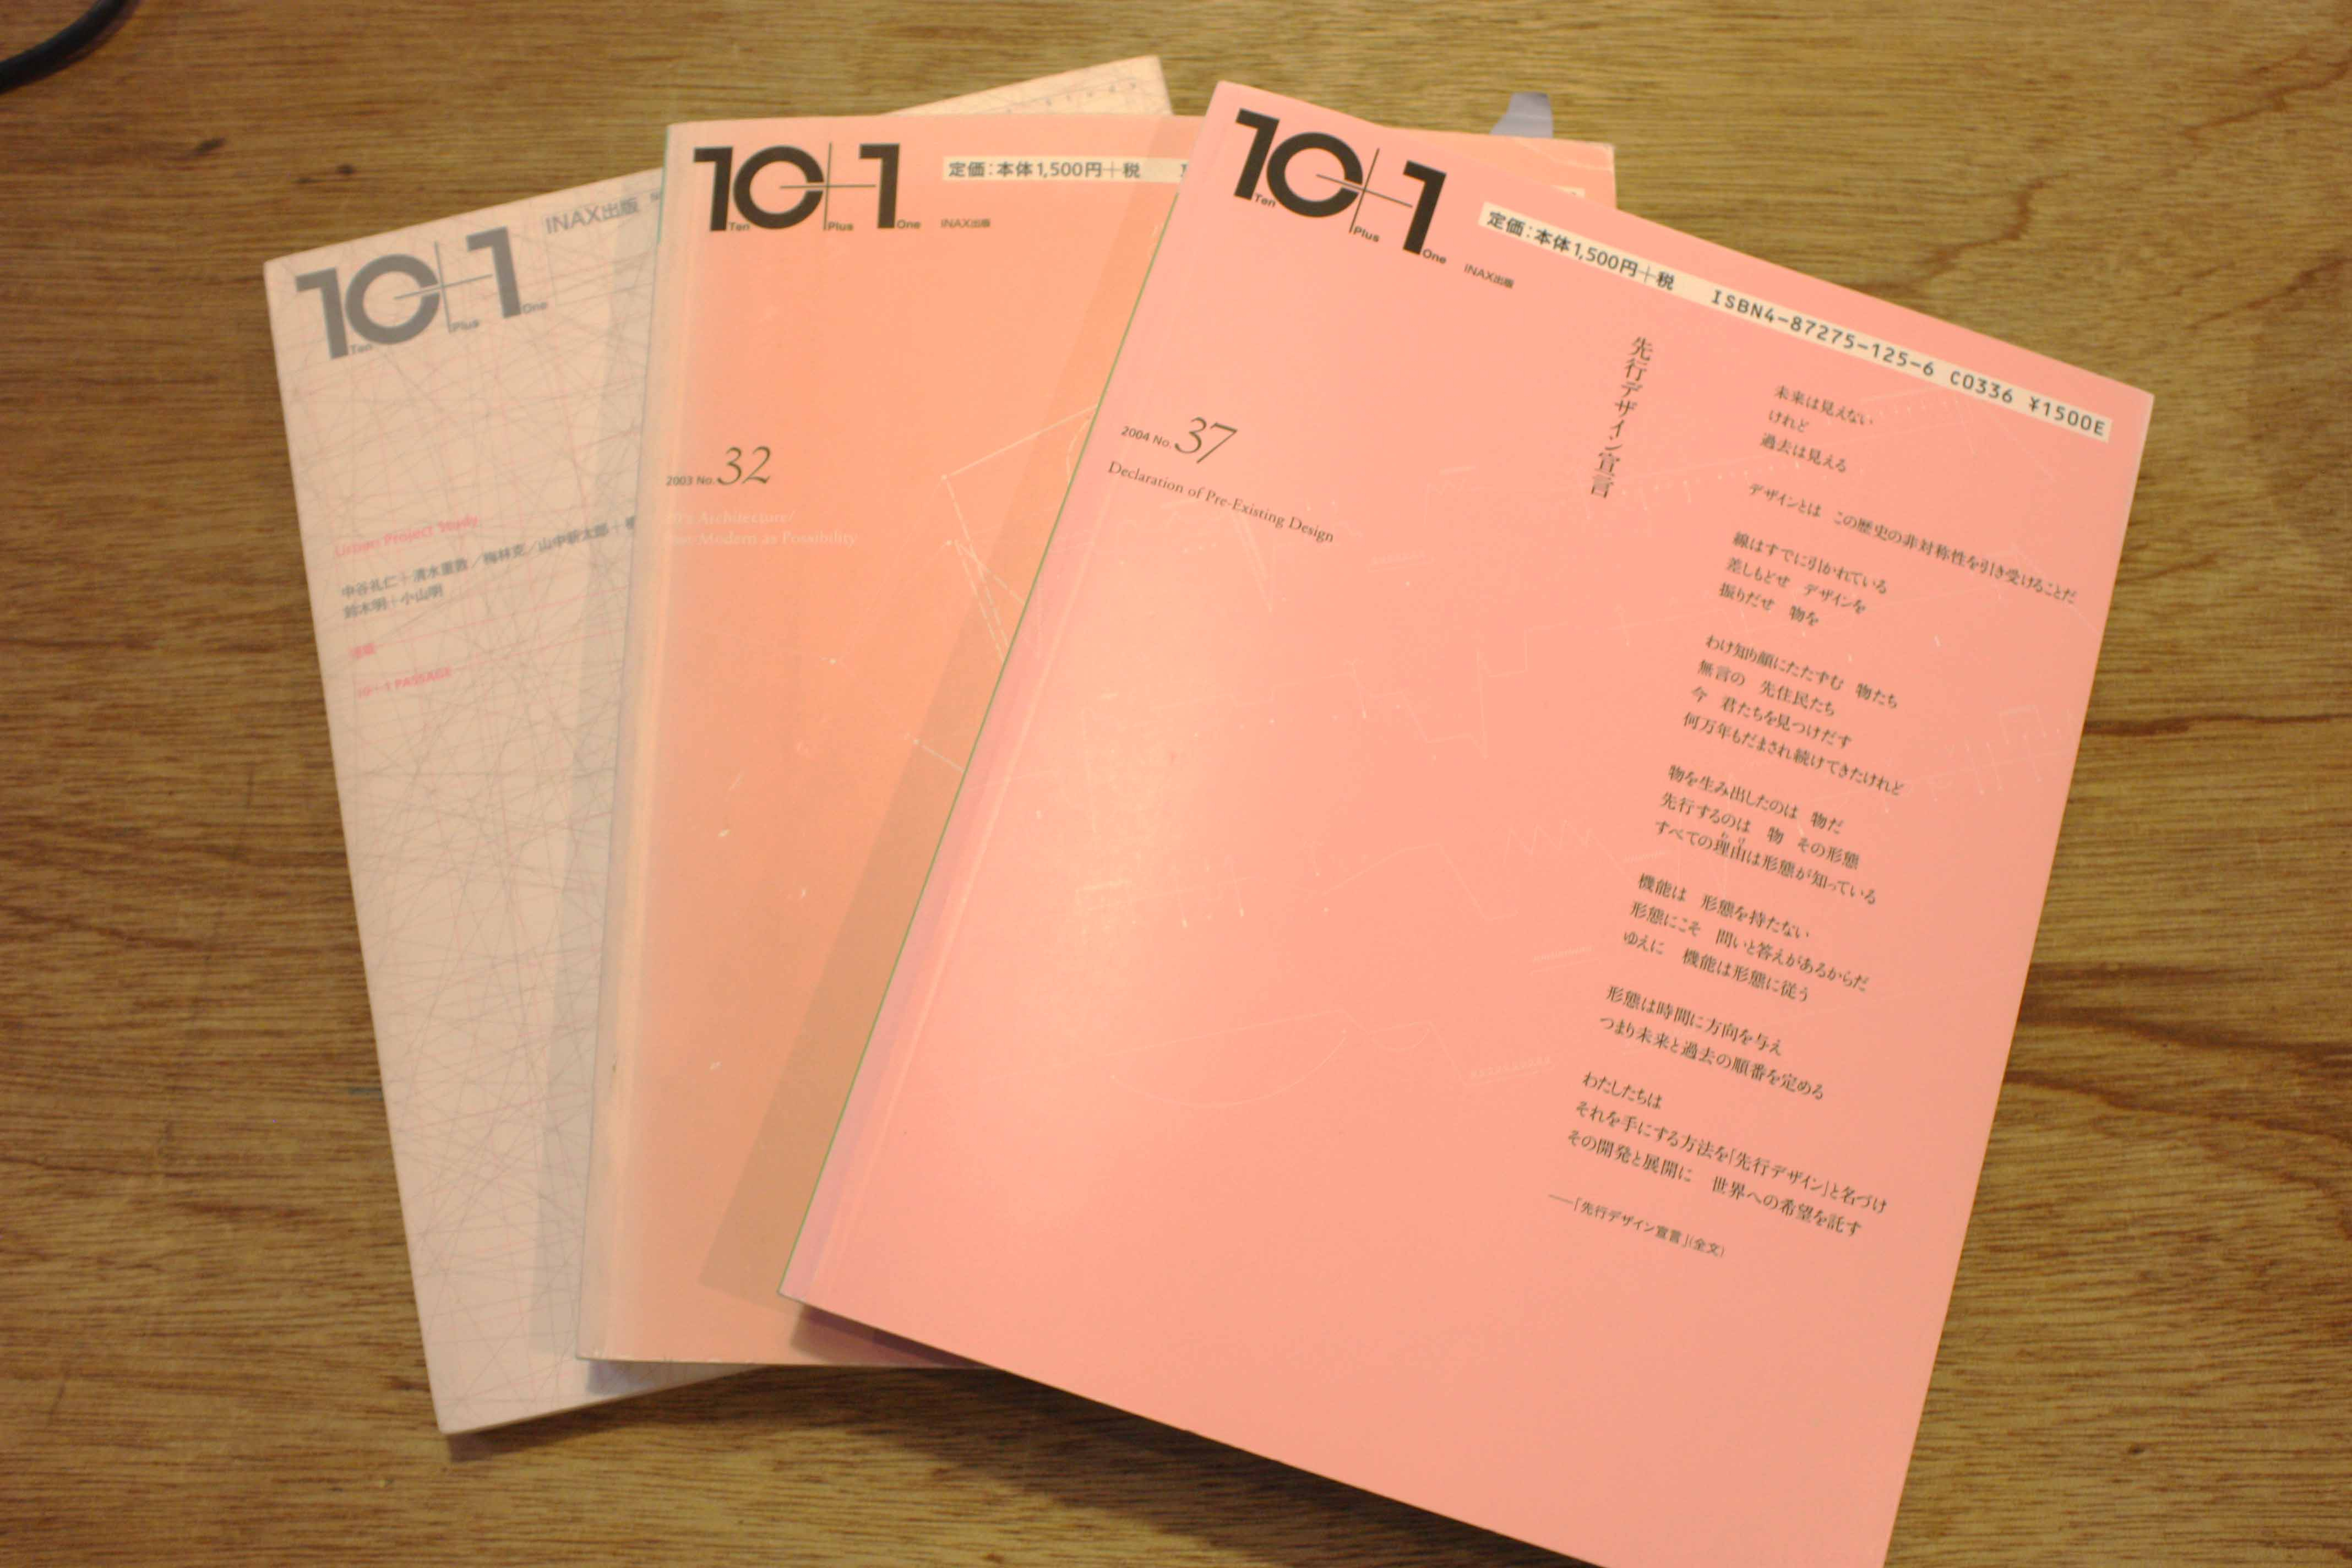 当時のプロジェクトが掲載されている雑誌『10 1』